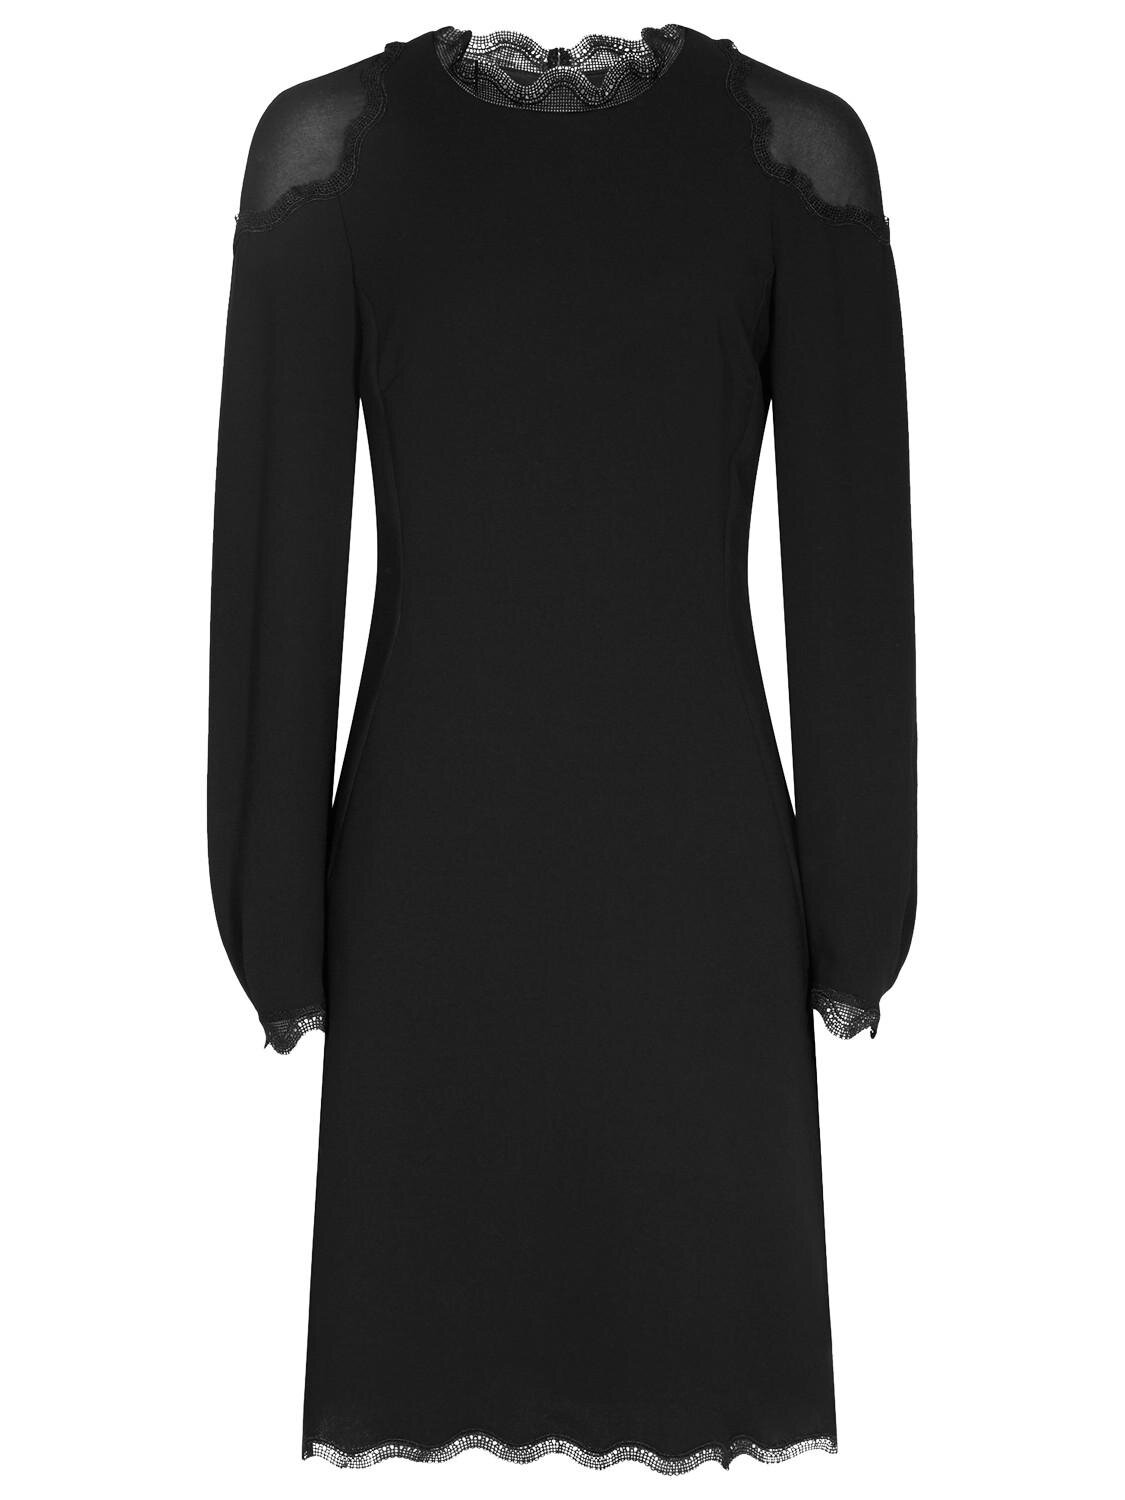 Reiss Ludervine Lace Detail Dress in Black.jpg